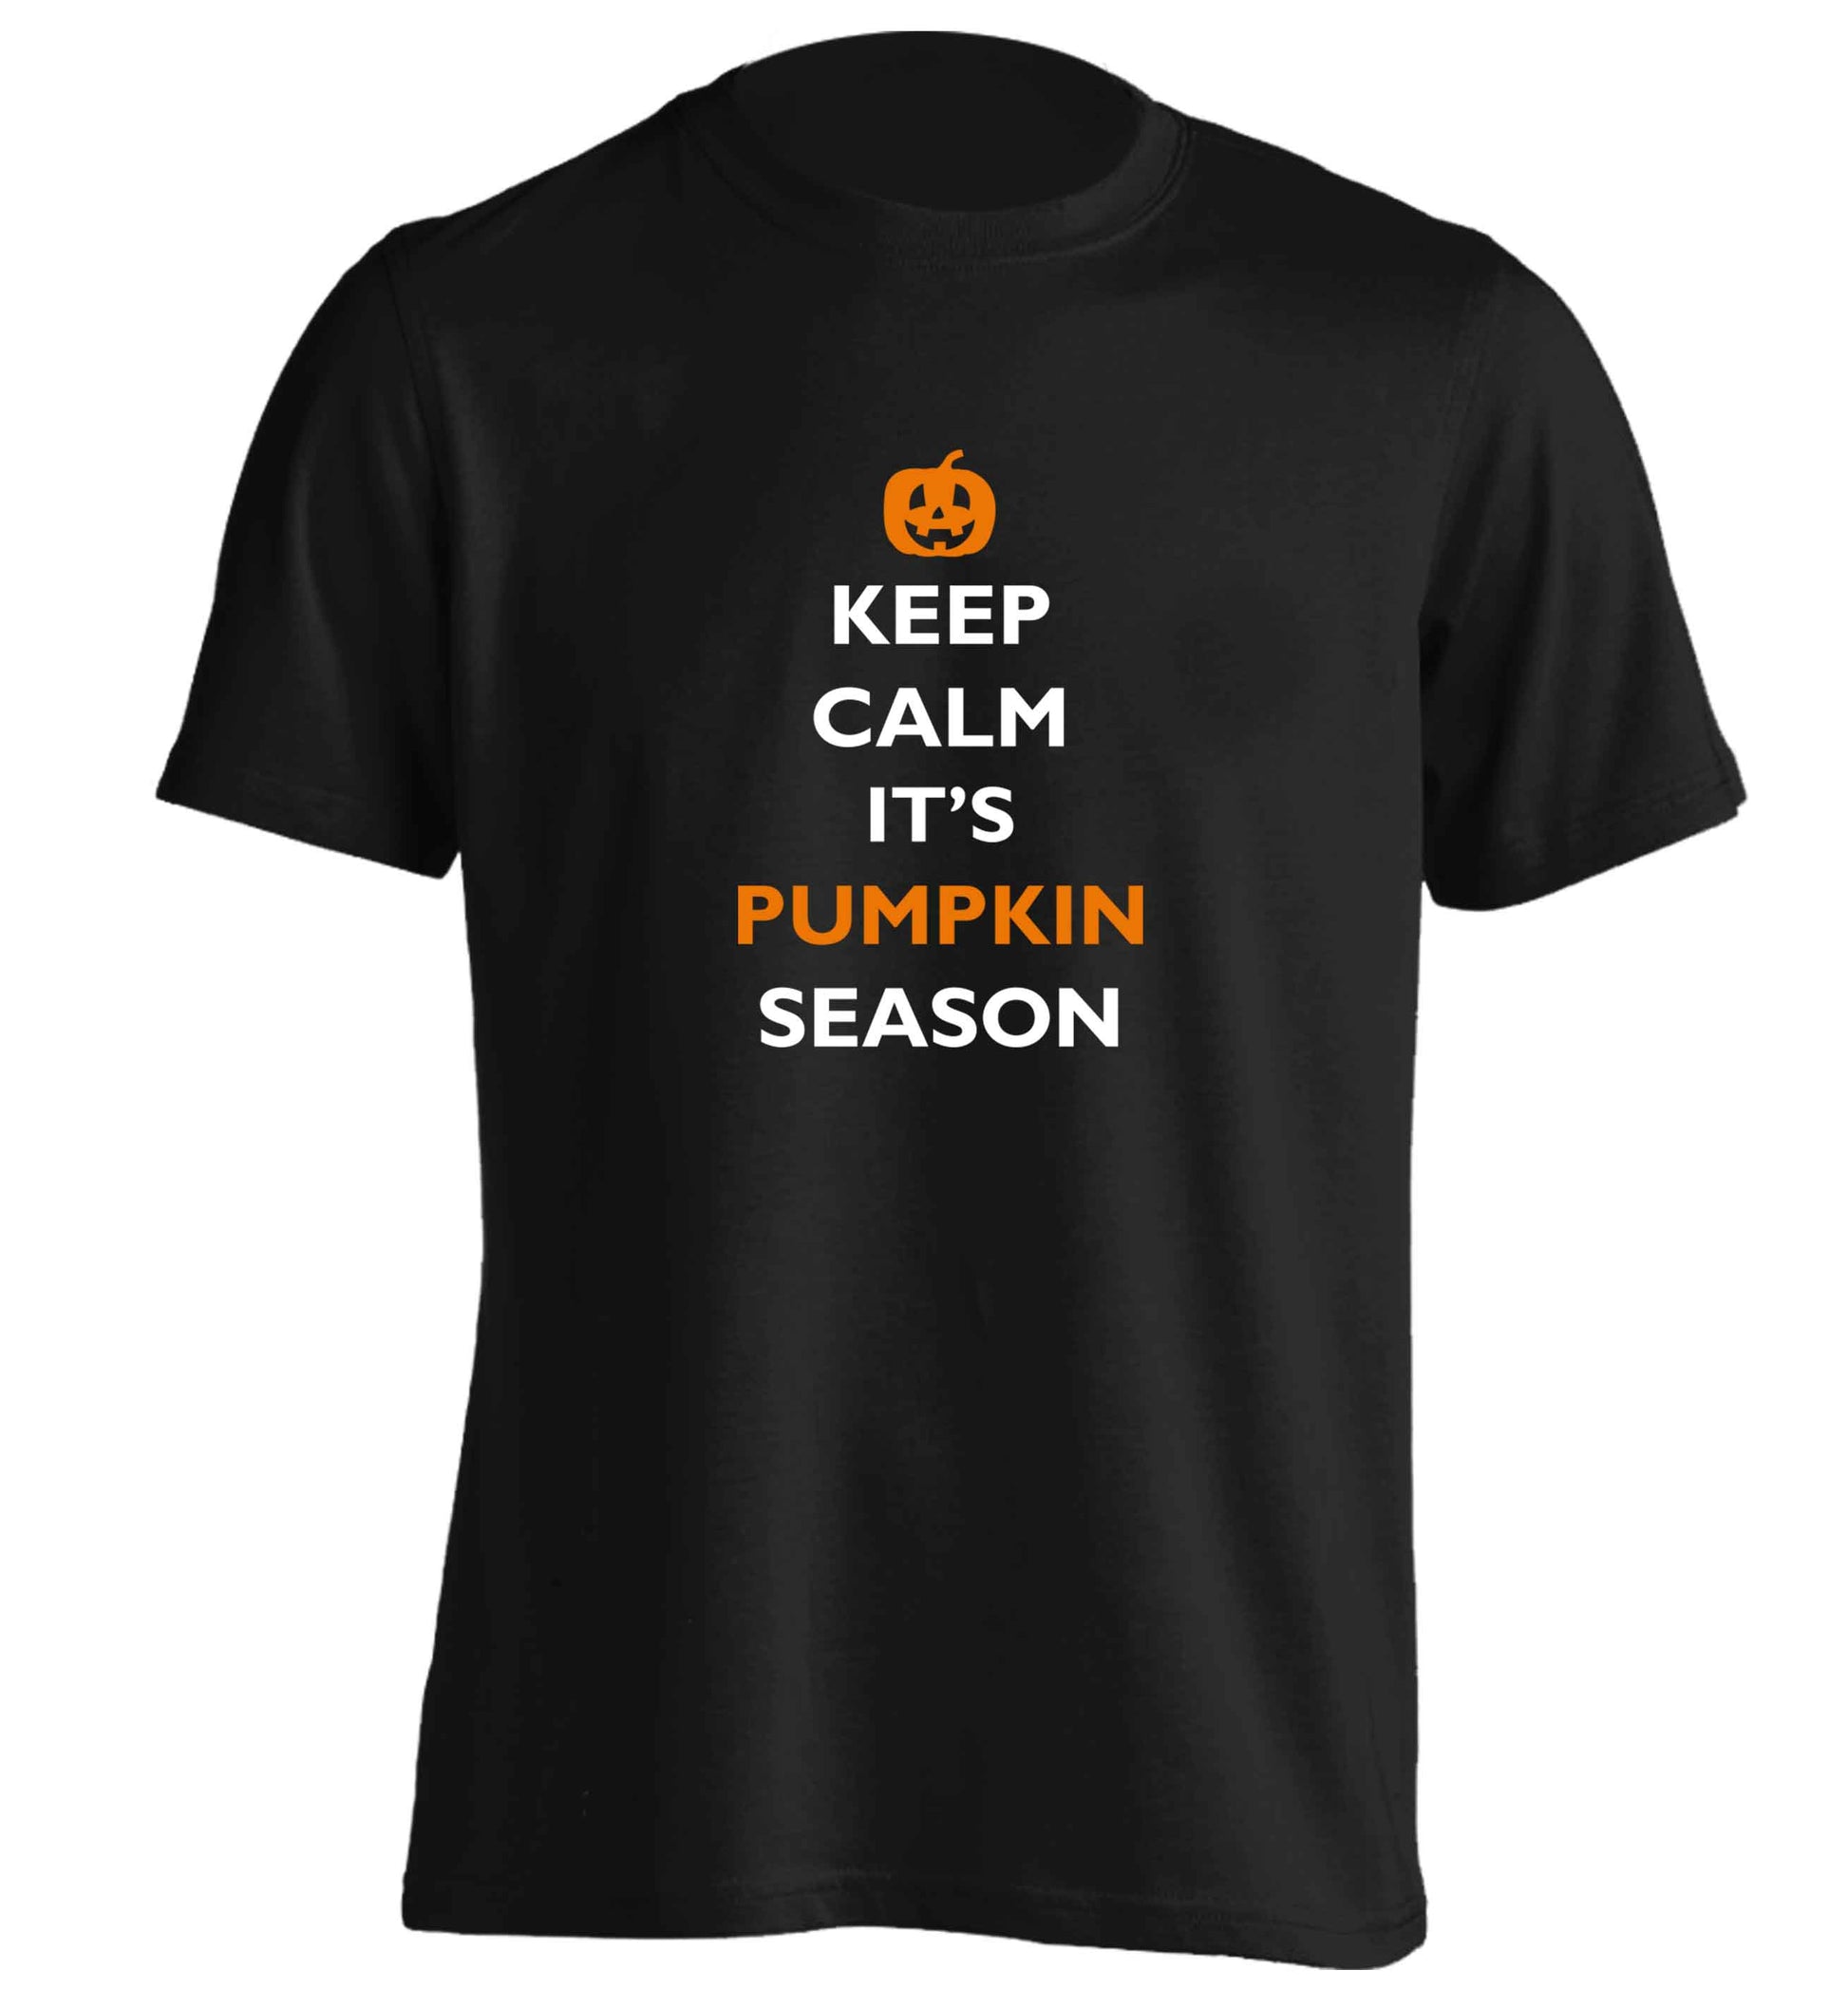 Calm Pumpkin Season adults unisex black Tshirt 2XL